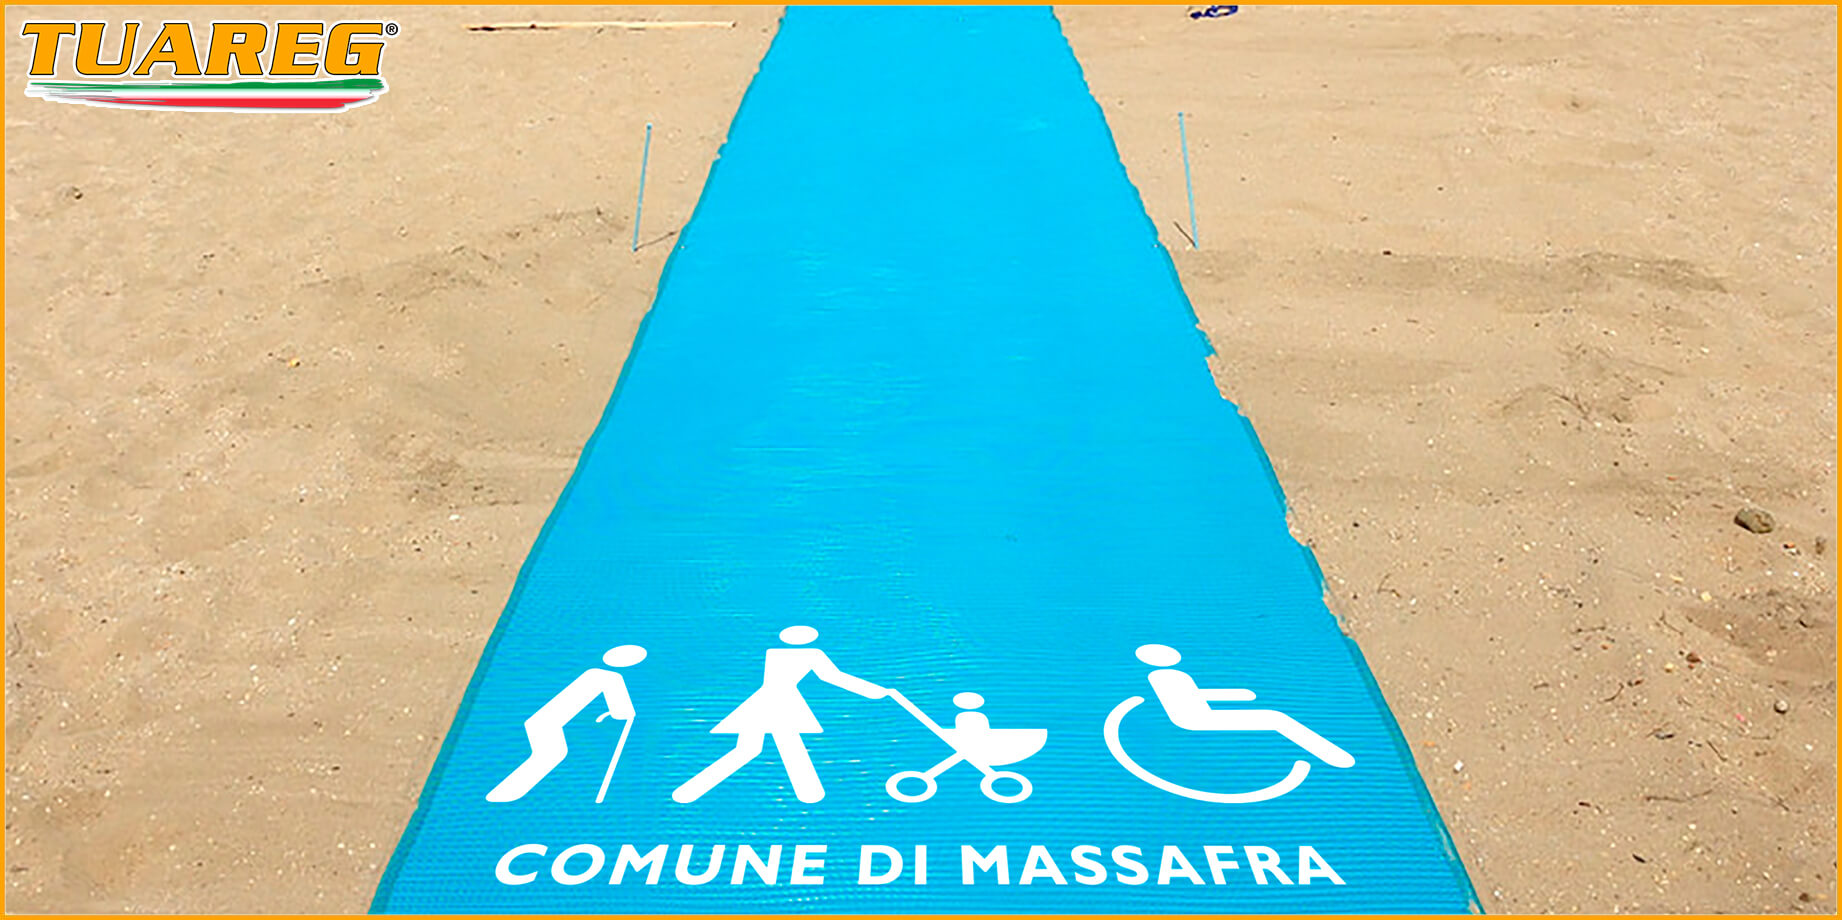 Tappeto/Passerella Arrotolabile da Spiaggia - Tuareg Access - Prodotto/Accessorio per l'Accessibilità delle Spiagge